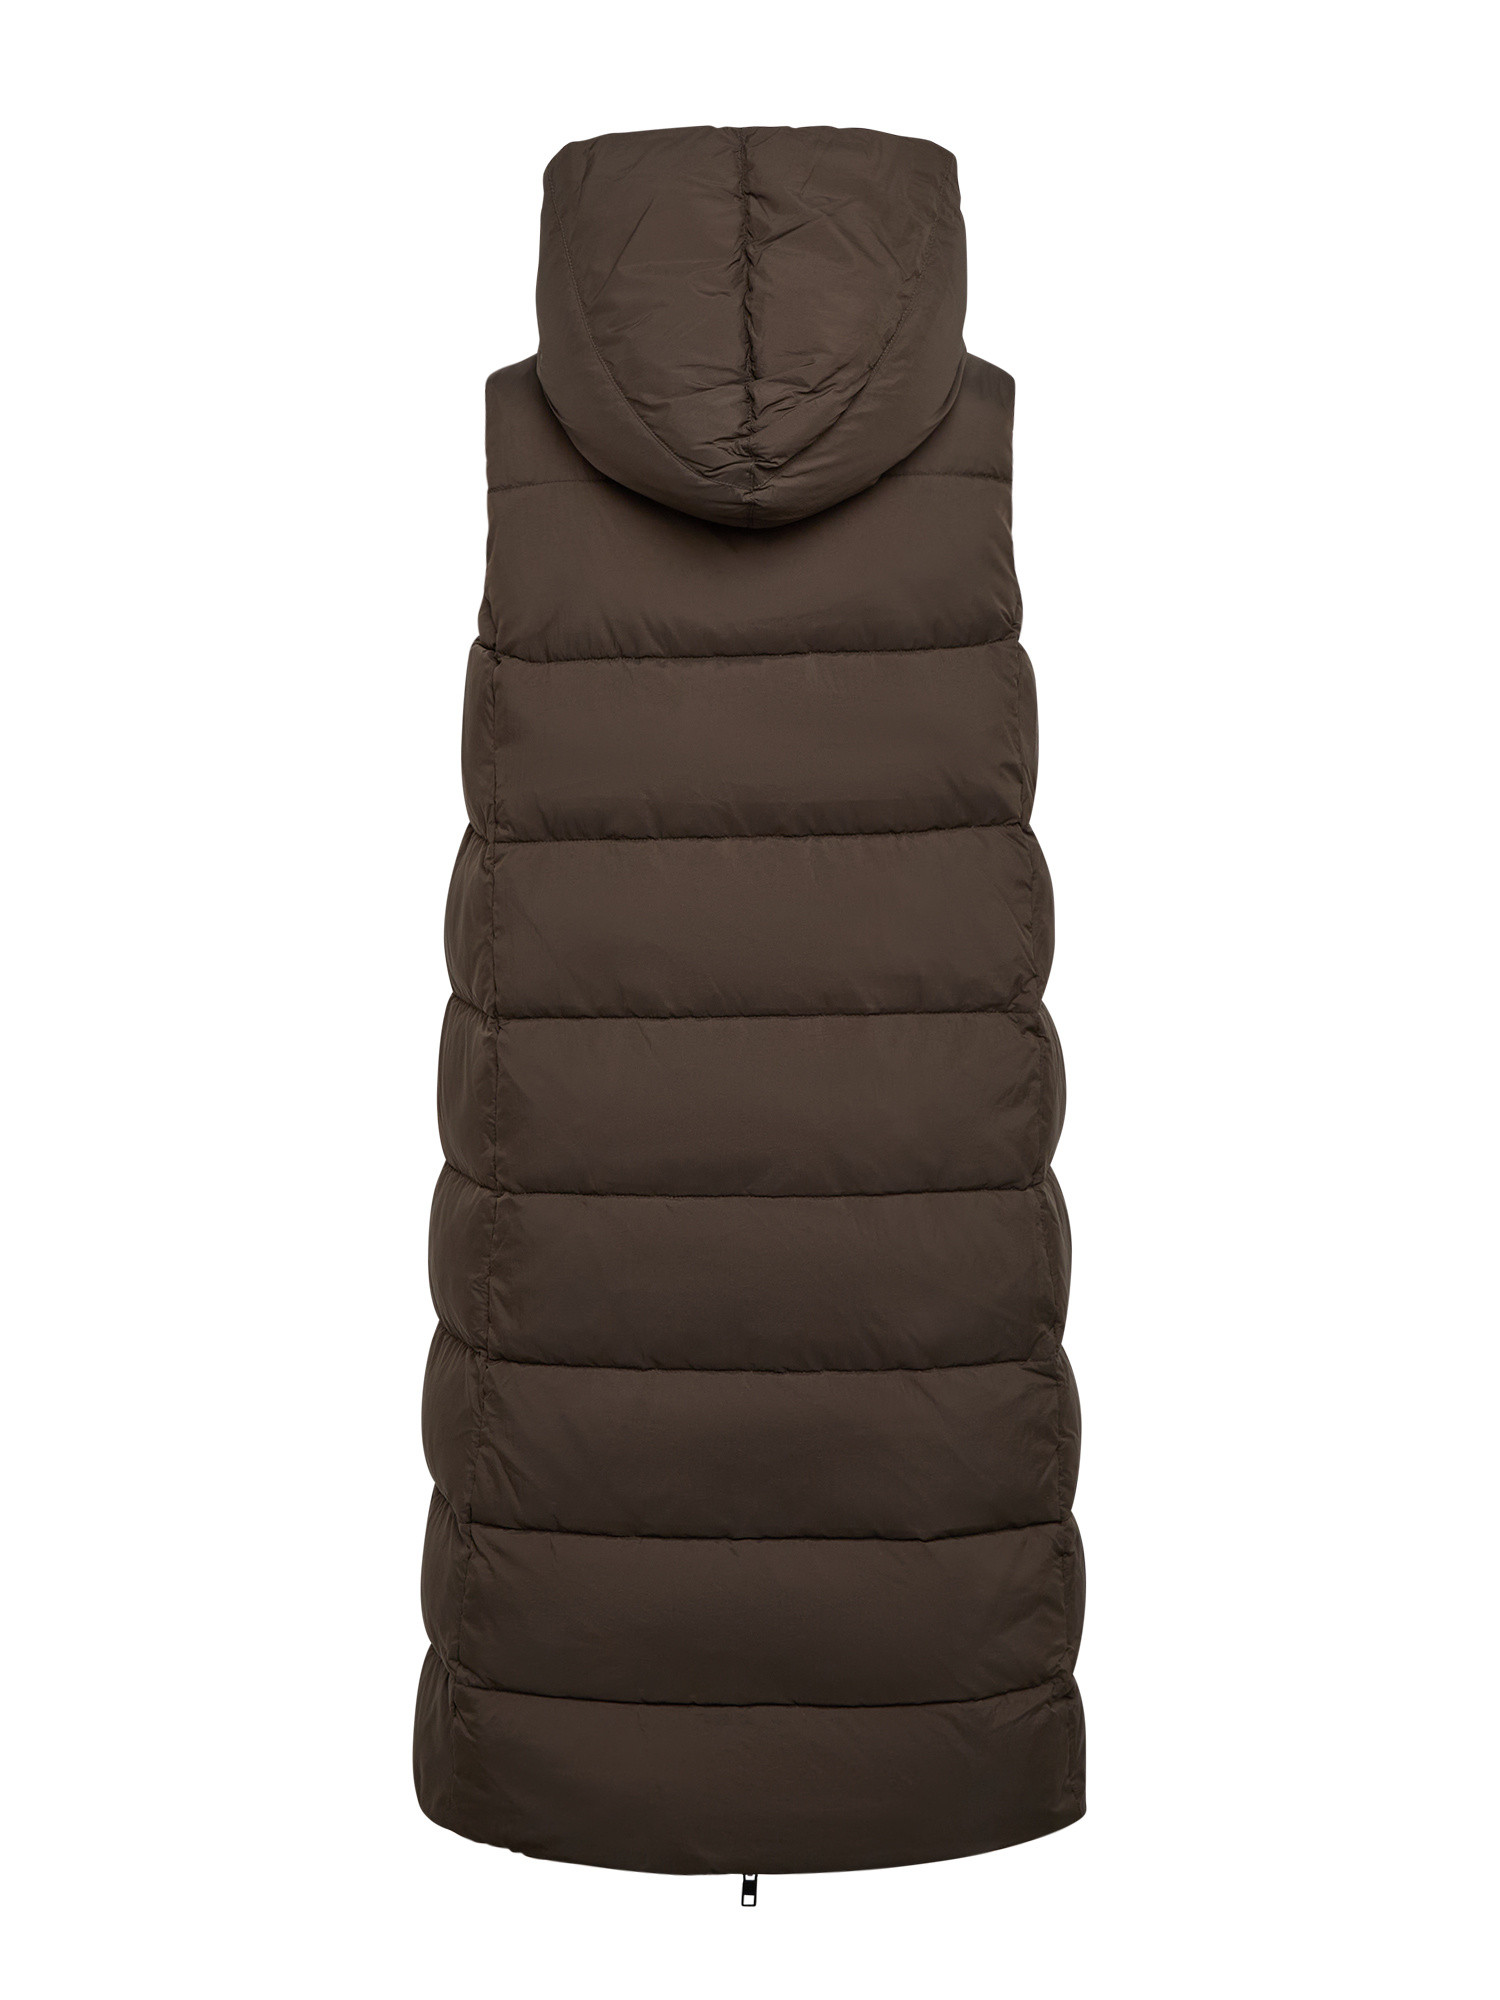 Canadian - Agathe vest, Olive Green, large image number 1